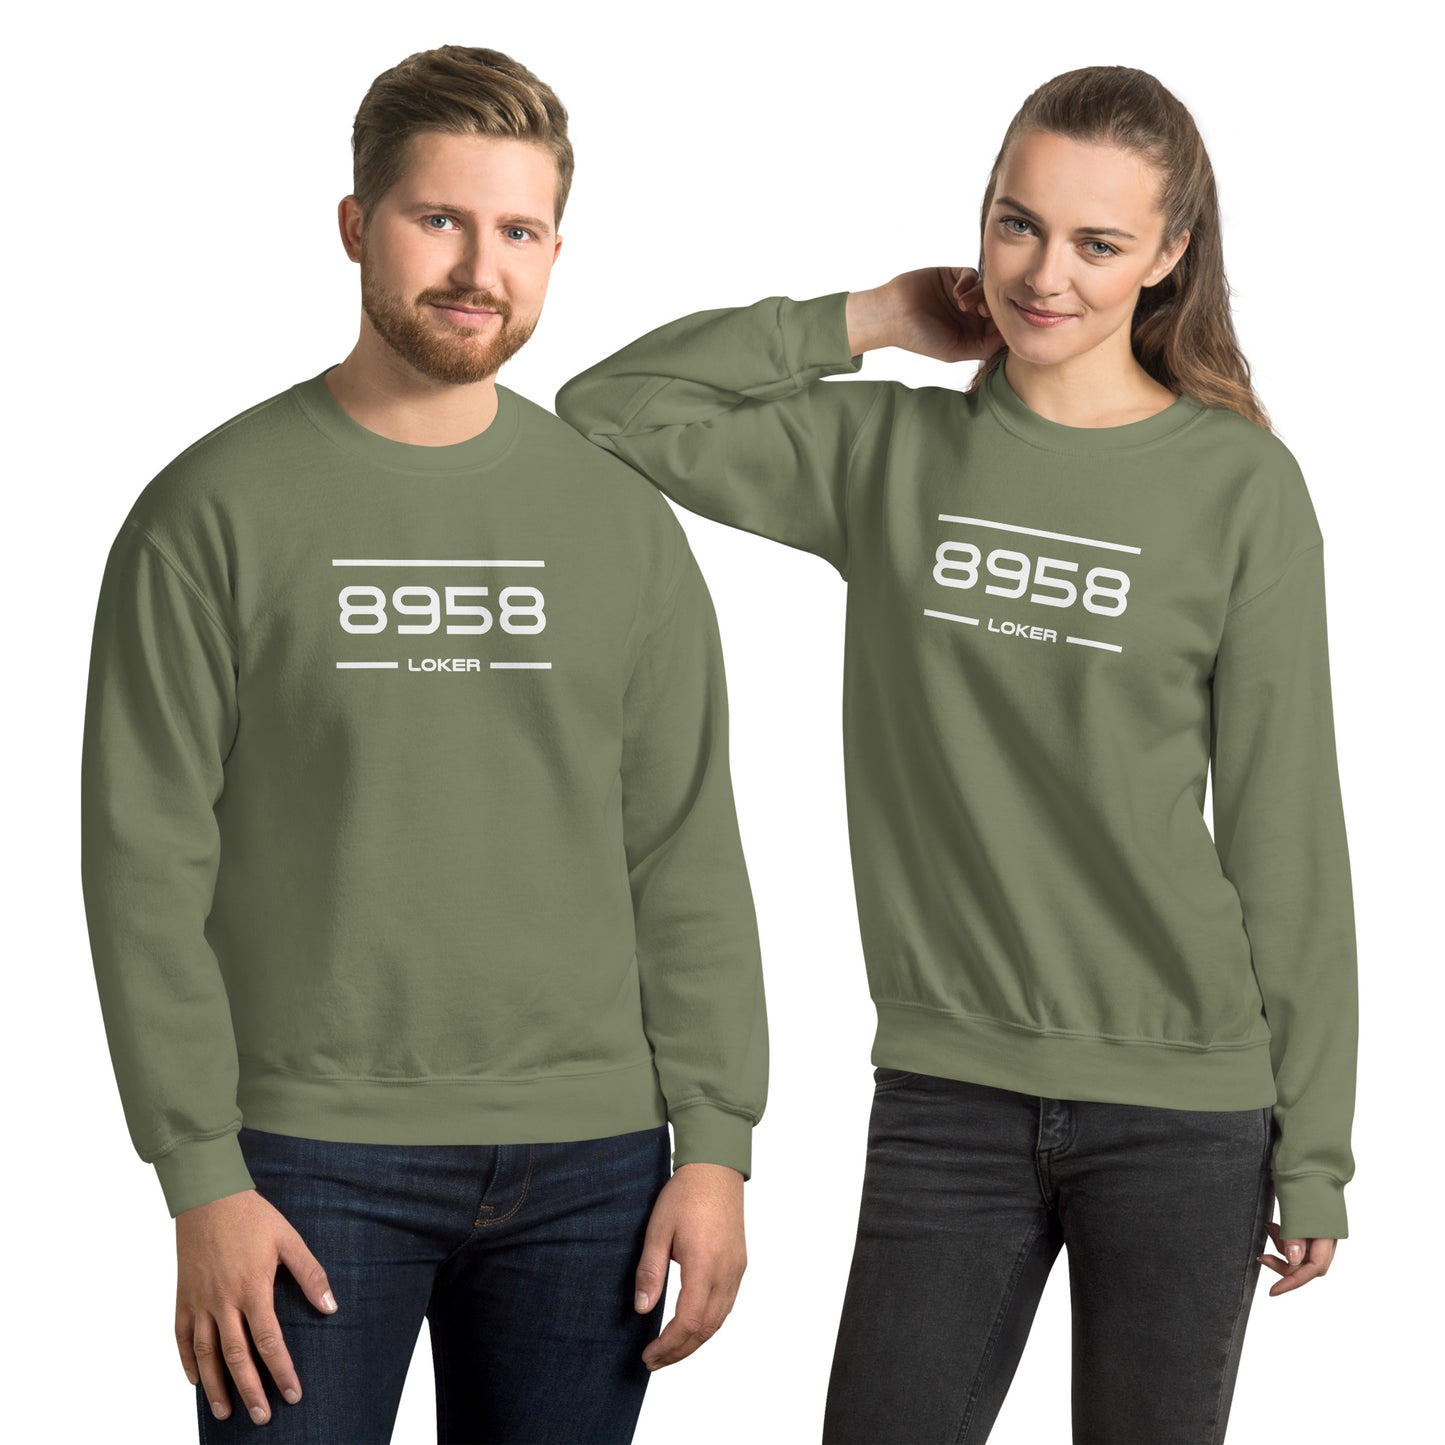 Sweater - 8958 - Loker (M/V)